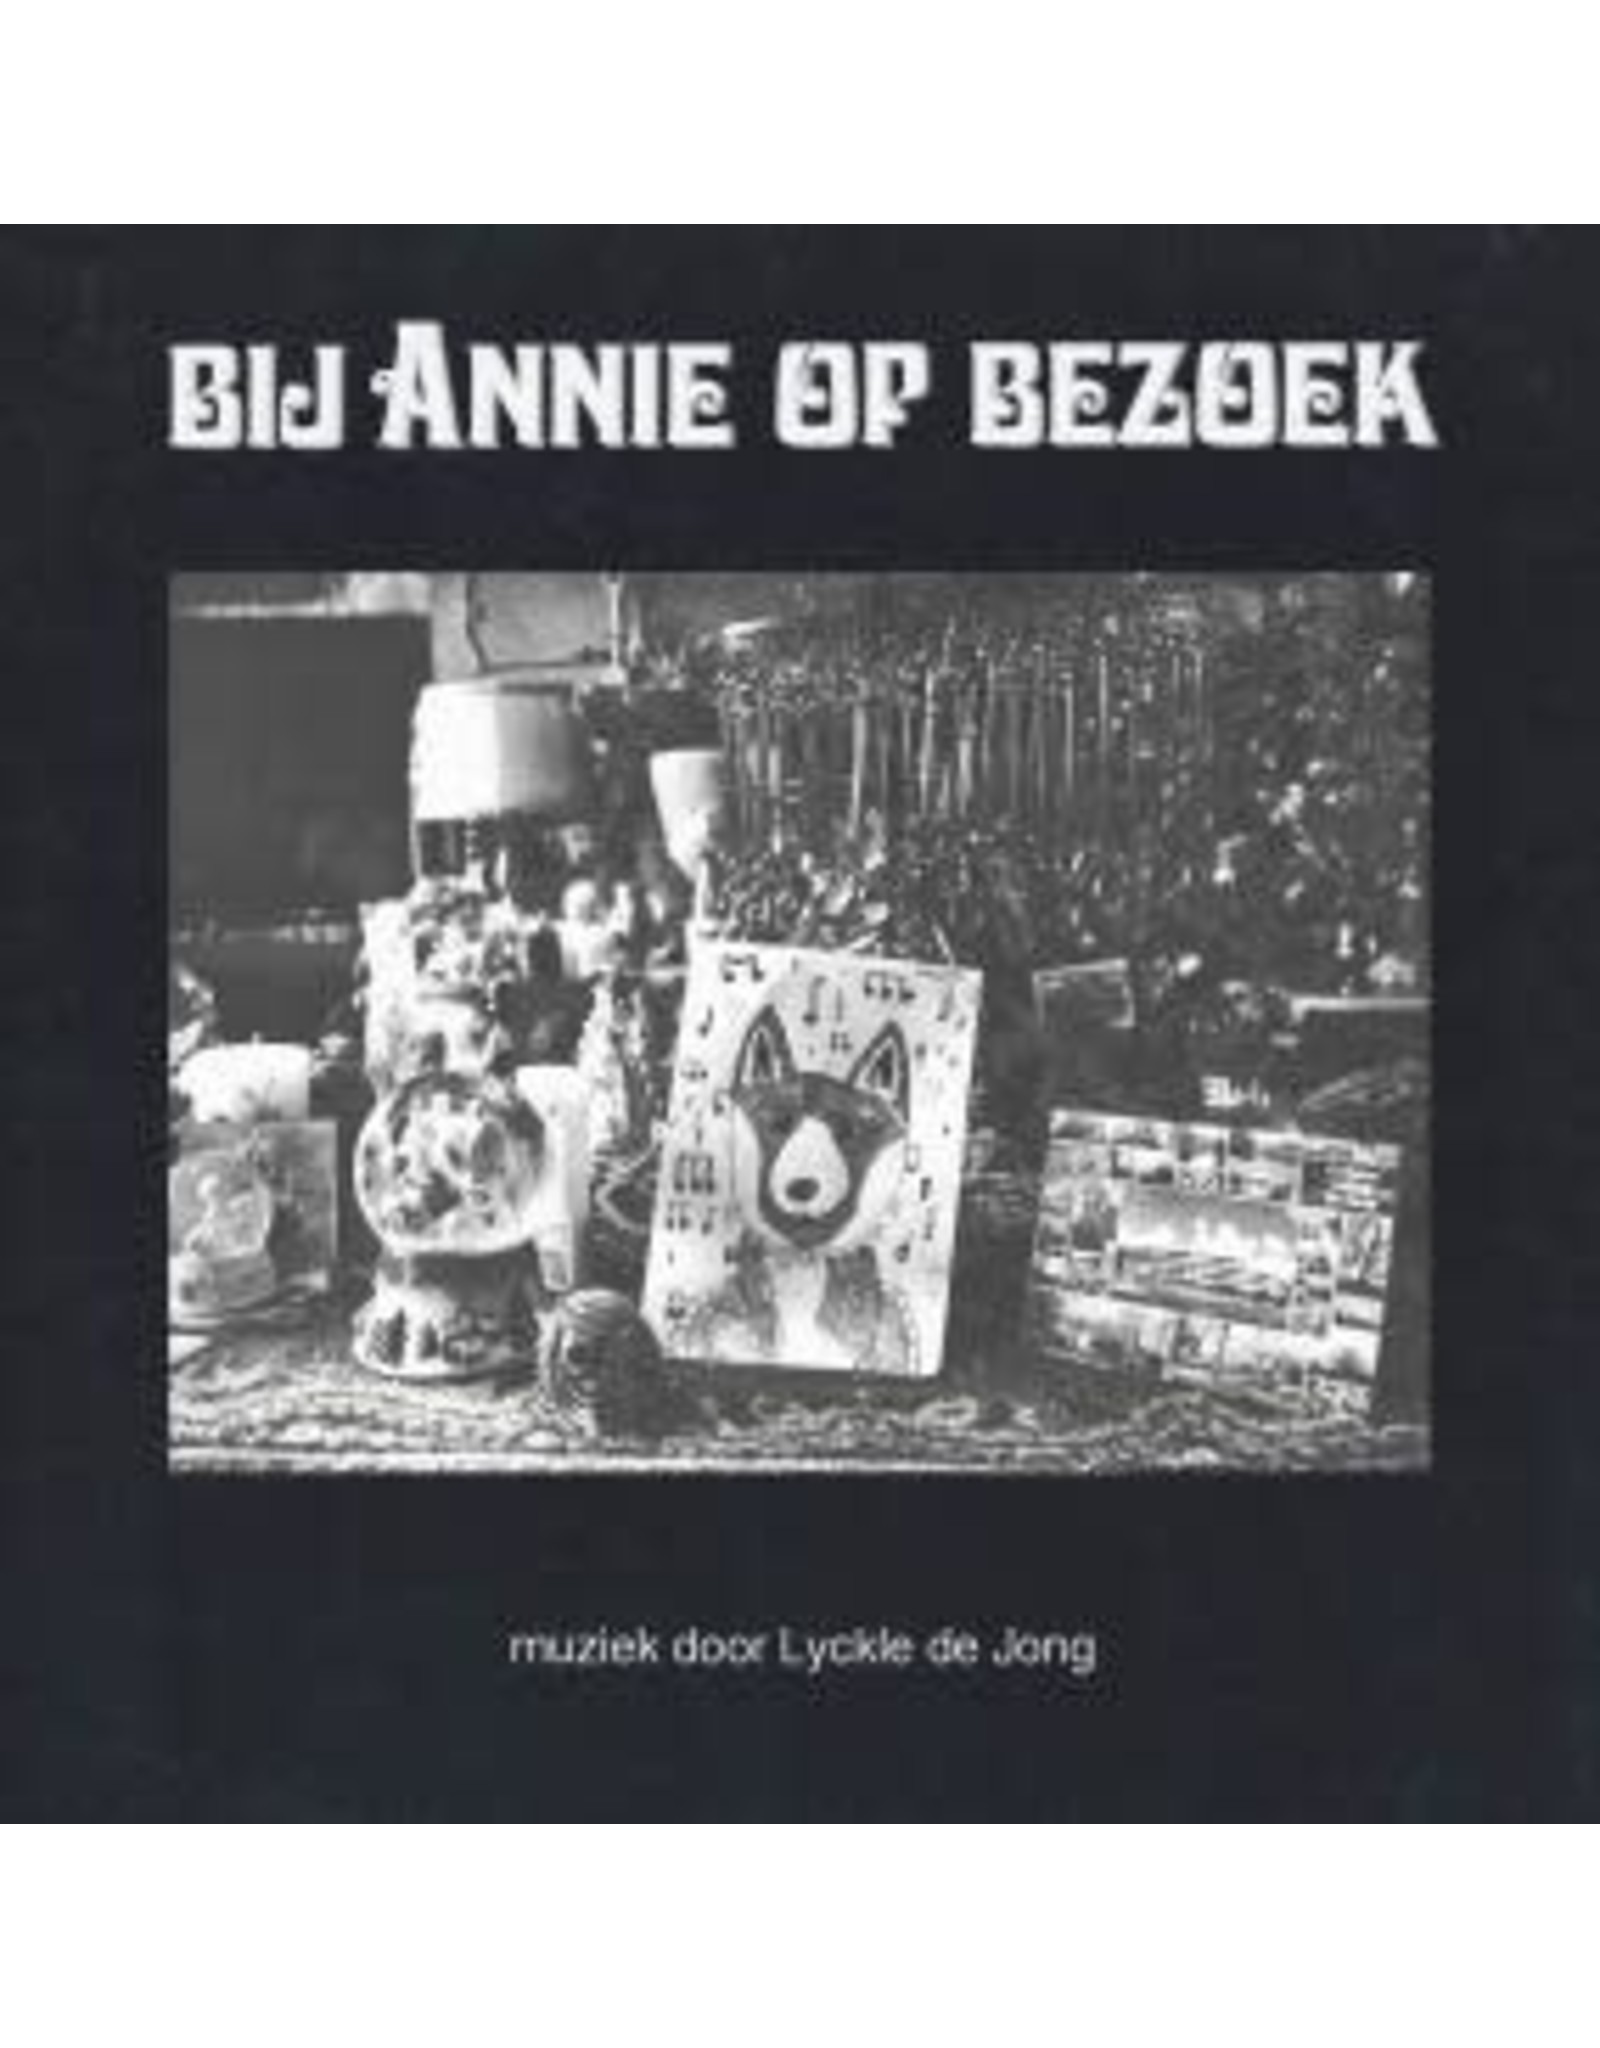 South of North De Jong, Lyckle: Bij Annie of Bezoek LP